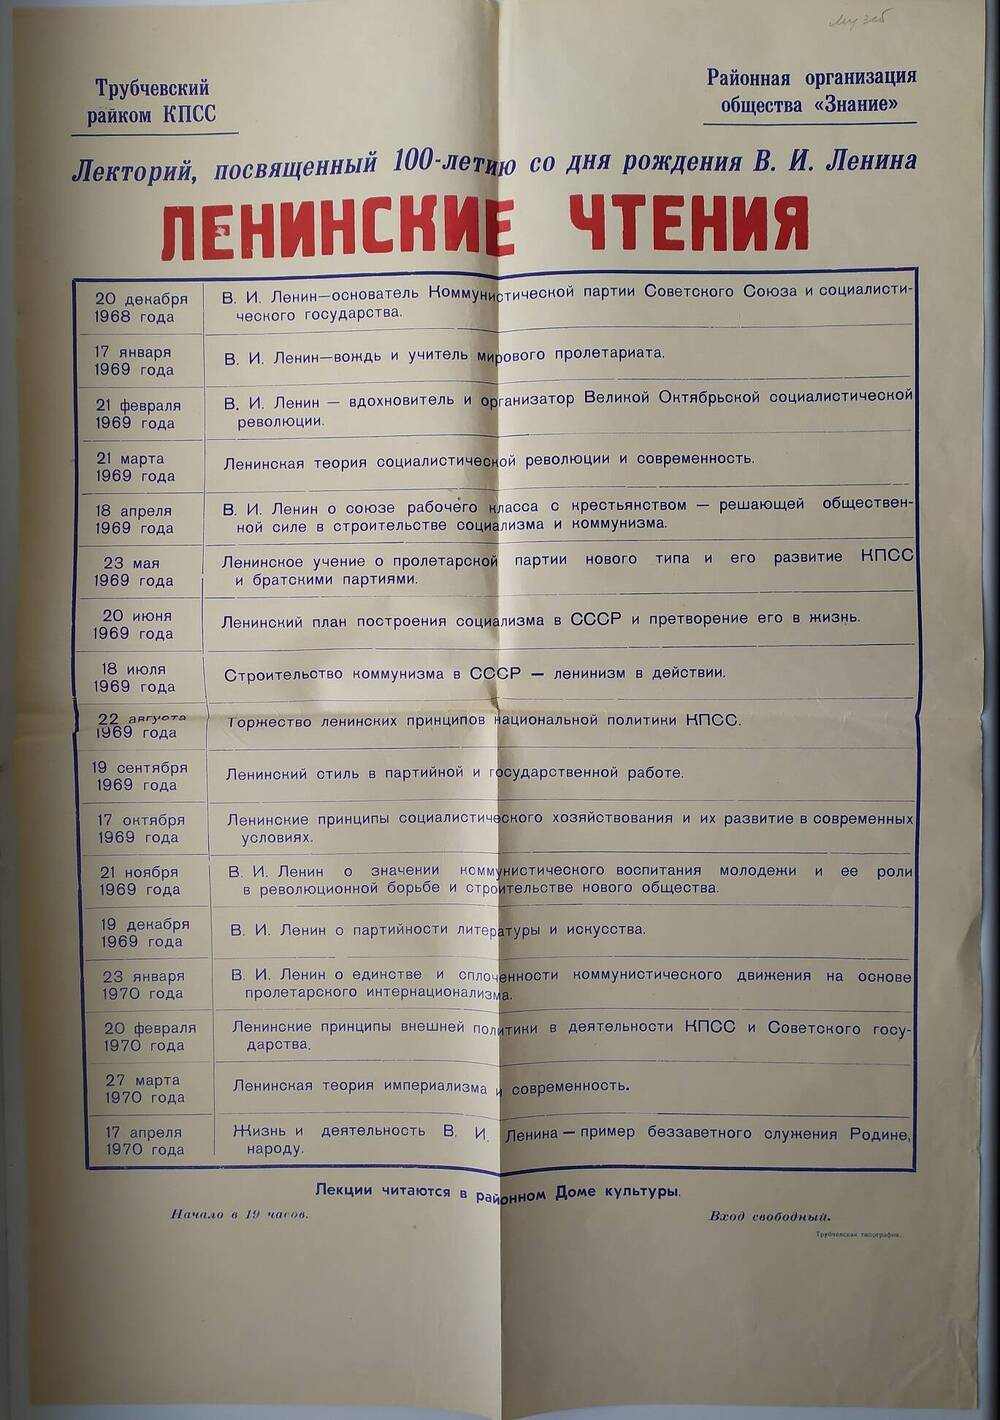 Программа мероприятия Ленинские чтения к 100-летию со дня рождения В.И.Ленина